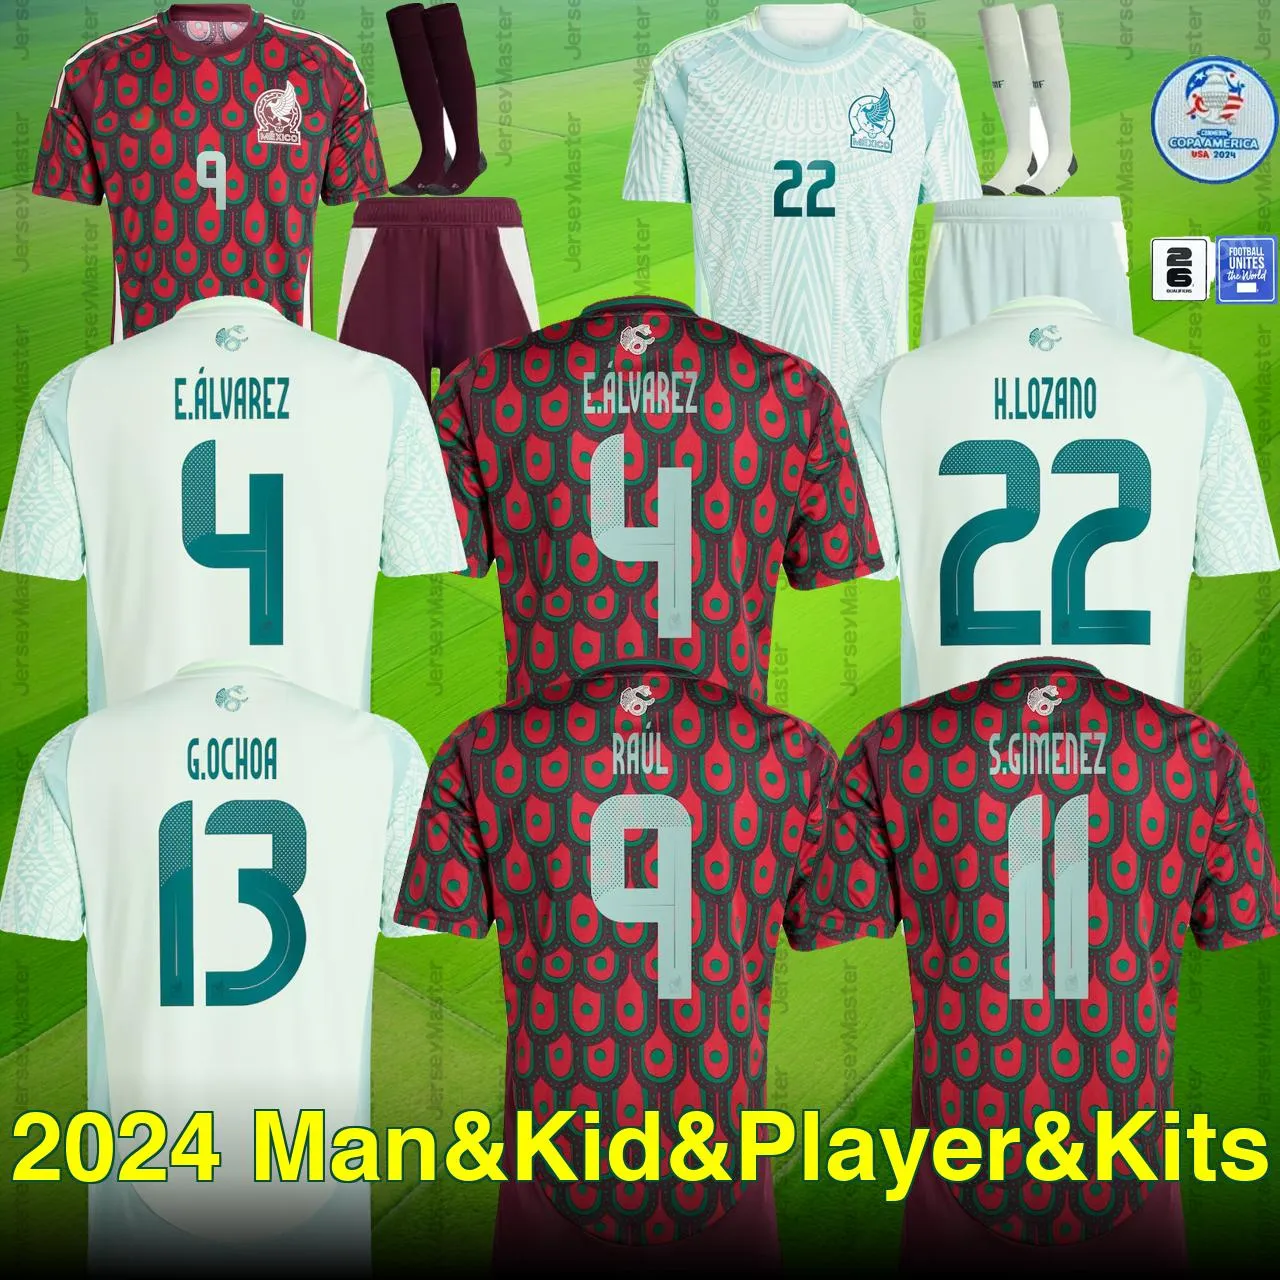 Mexiko 2024 Copa America 2026 Kvalificerare Raul Chicharito Soccer Jerseys Lozano Dos Santos 24 25 H.Lozano Men Kids Football Shirts Uniforms Fans Player Version